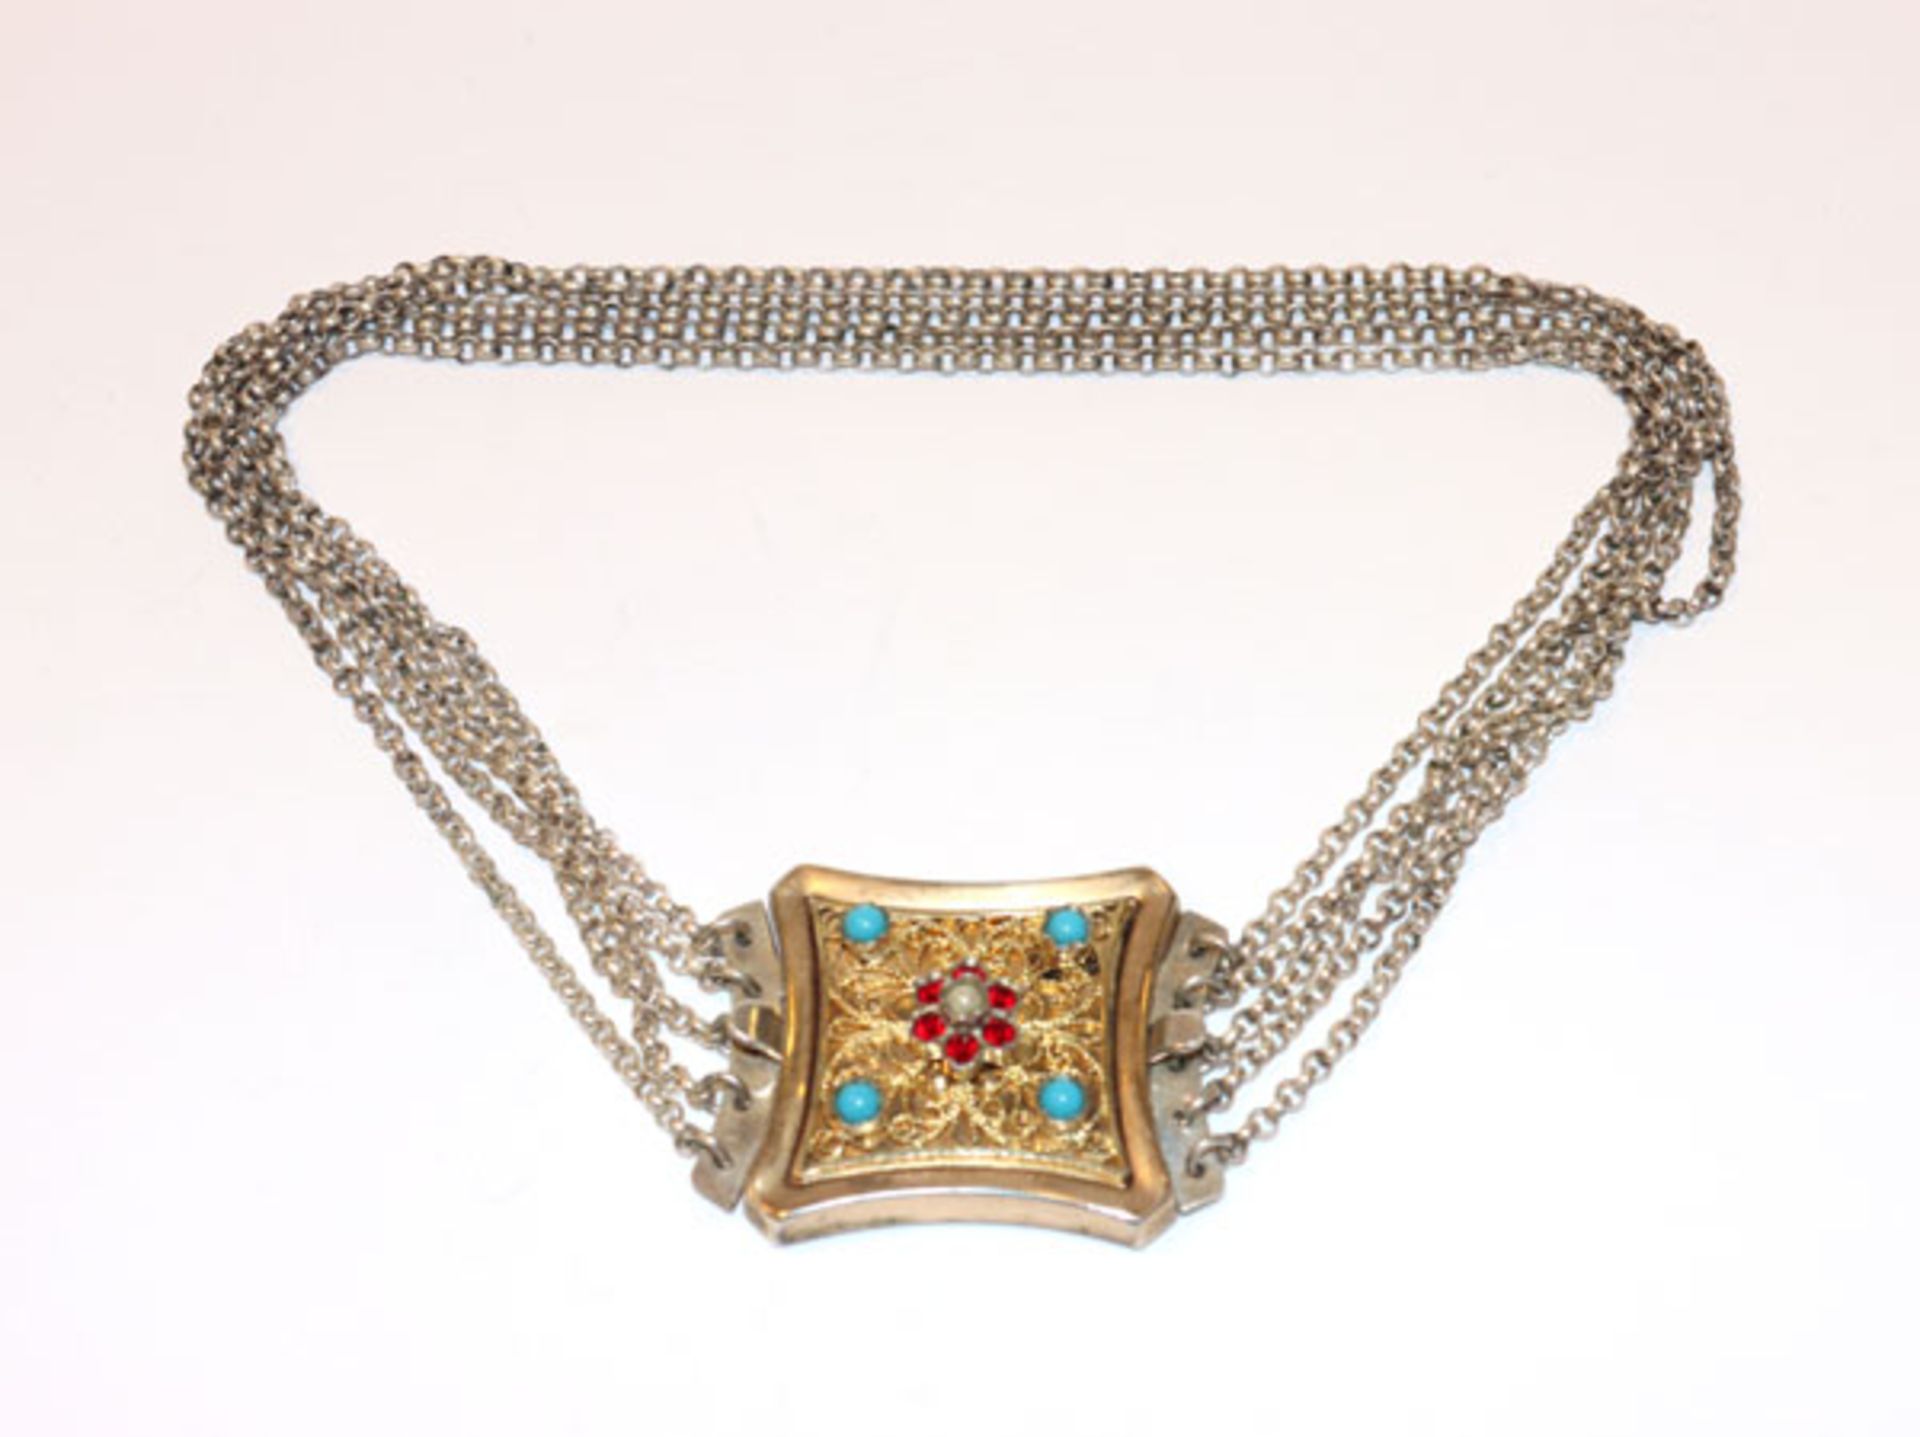 Silber Kropfkette, 5-reihig, vergoldete Schließe mit filigraner Verzierung, Granaten, kleiner